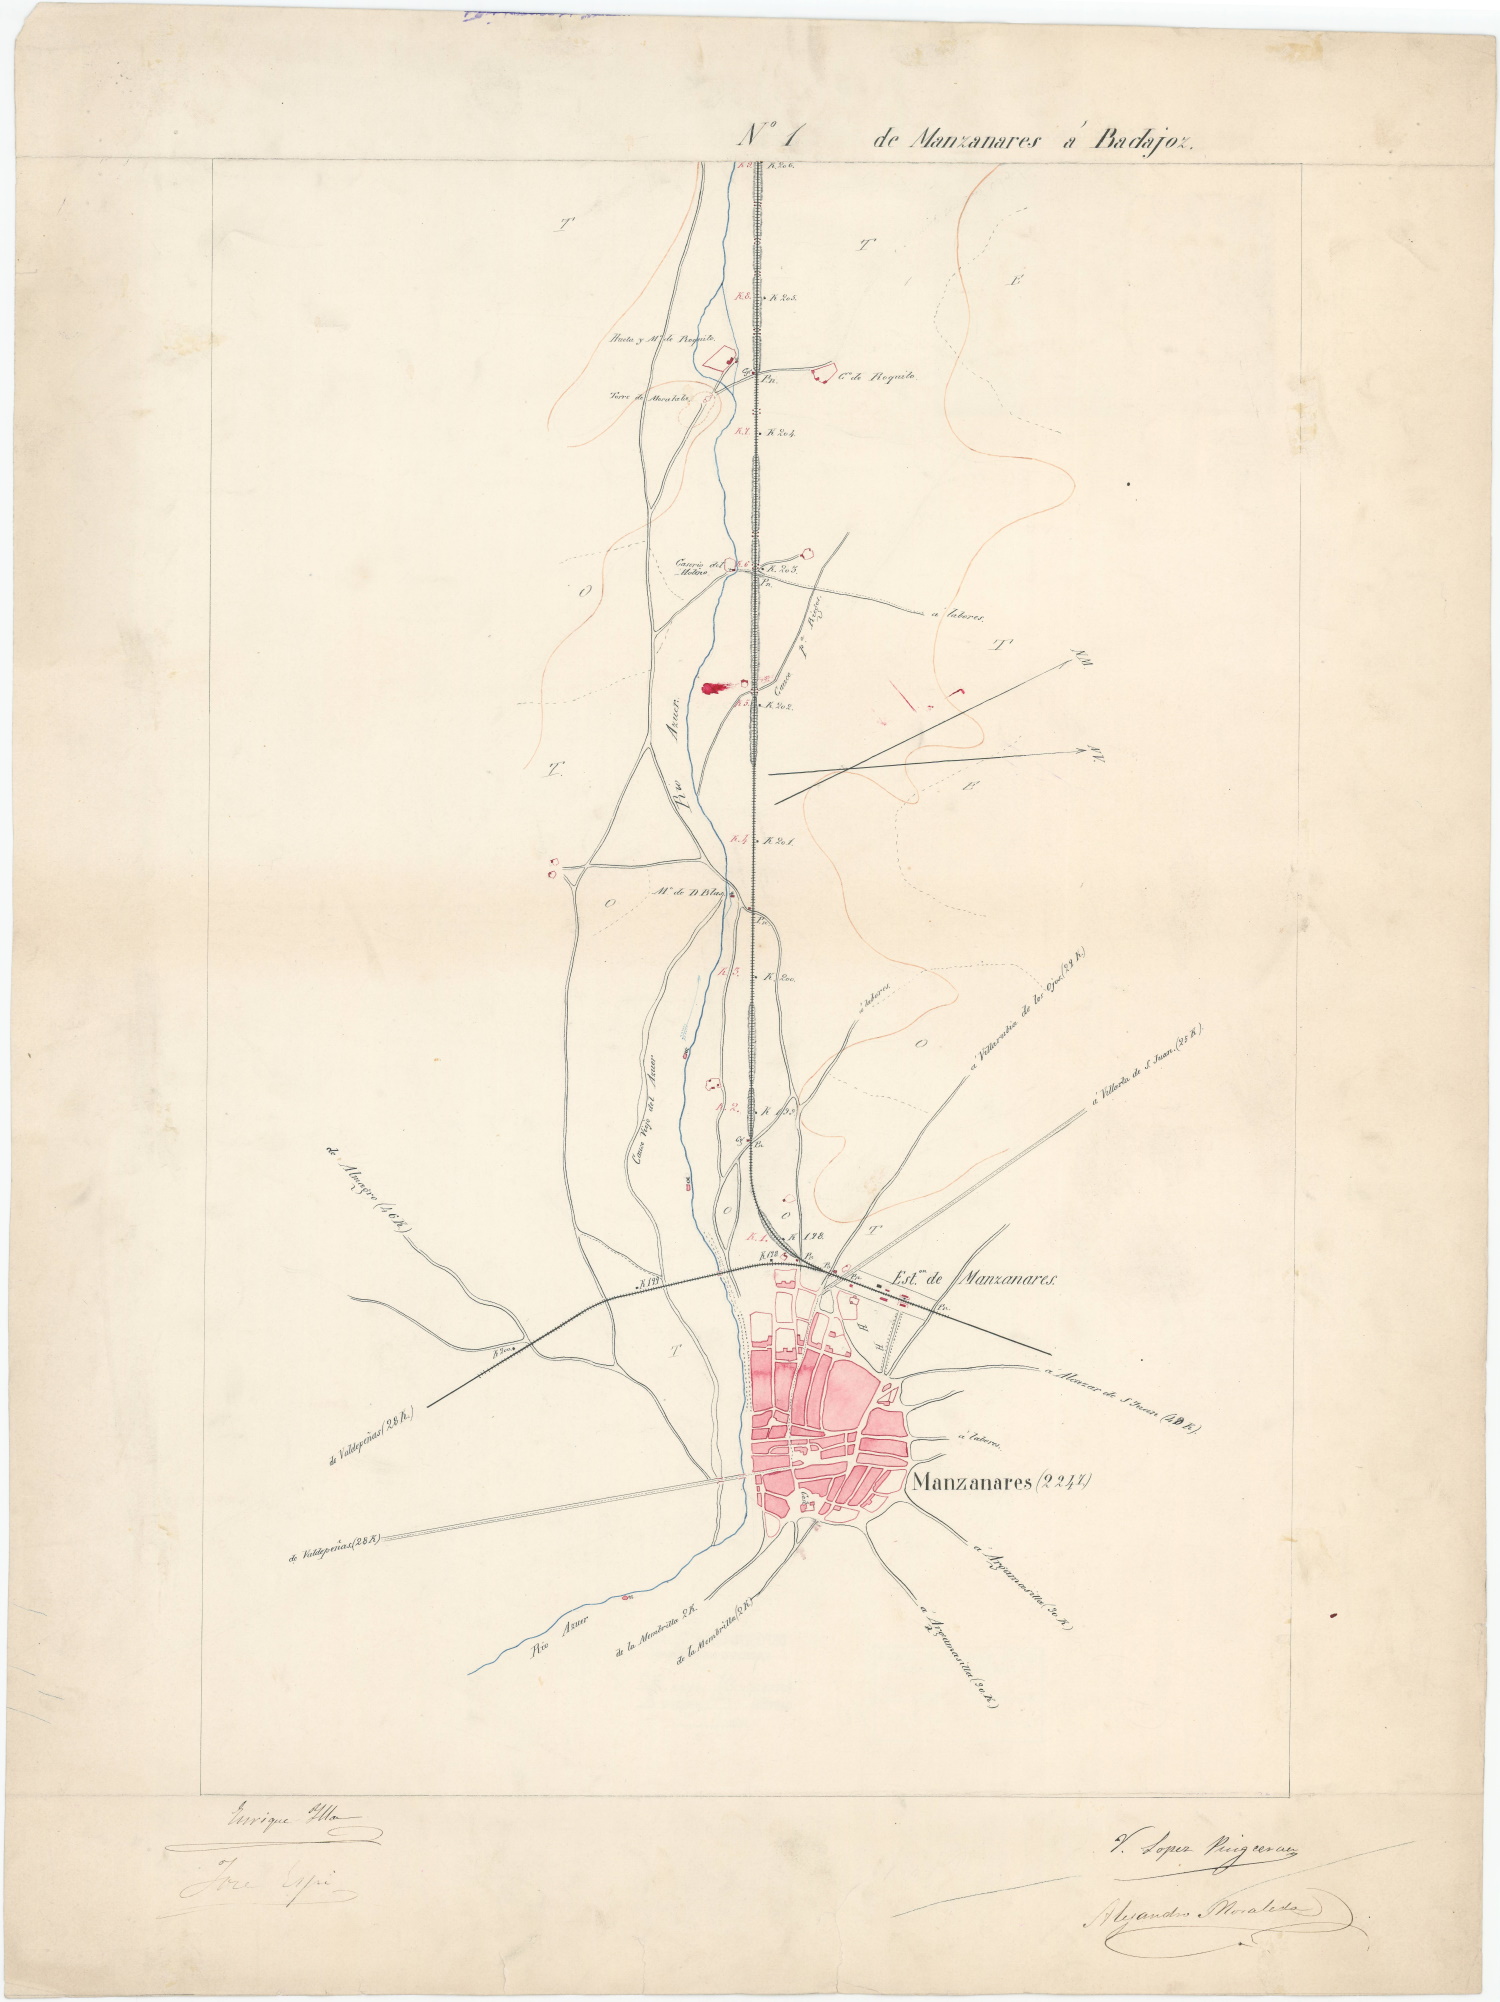 [Itinerario topográfico de la línea de ferrocarril] de Manzanares a Badajoz